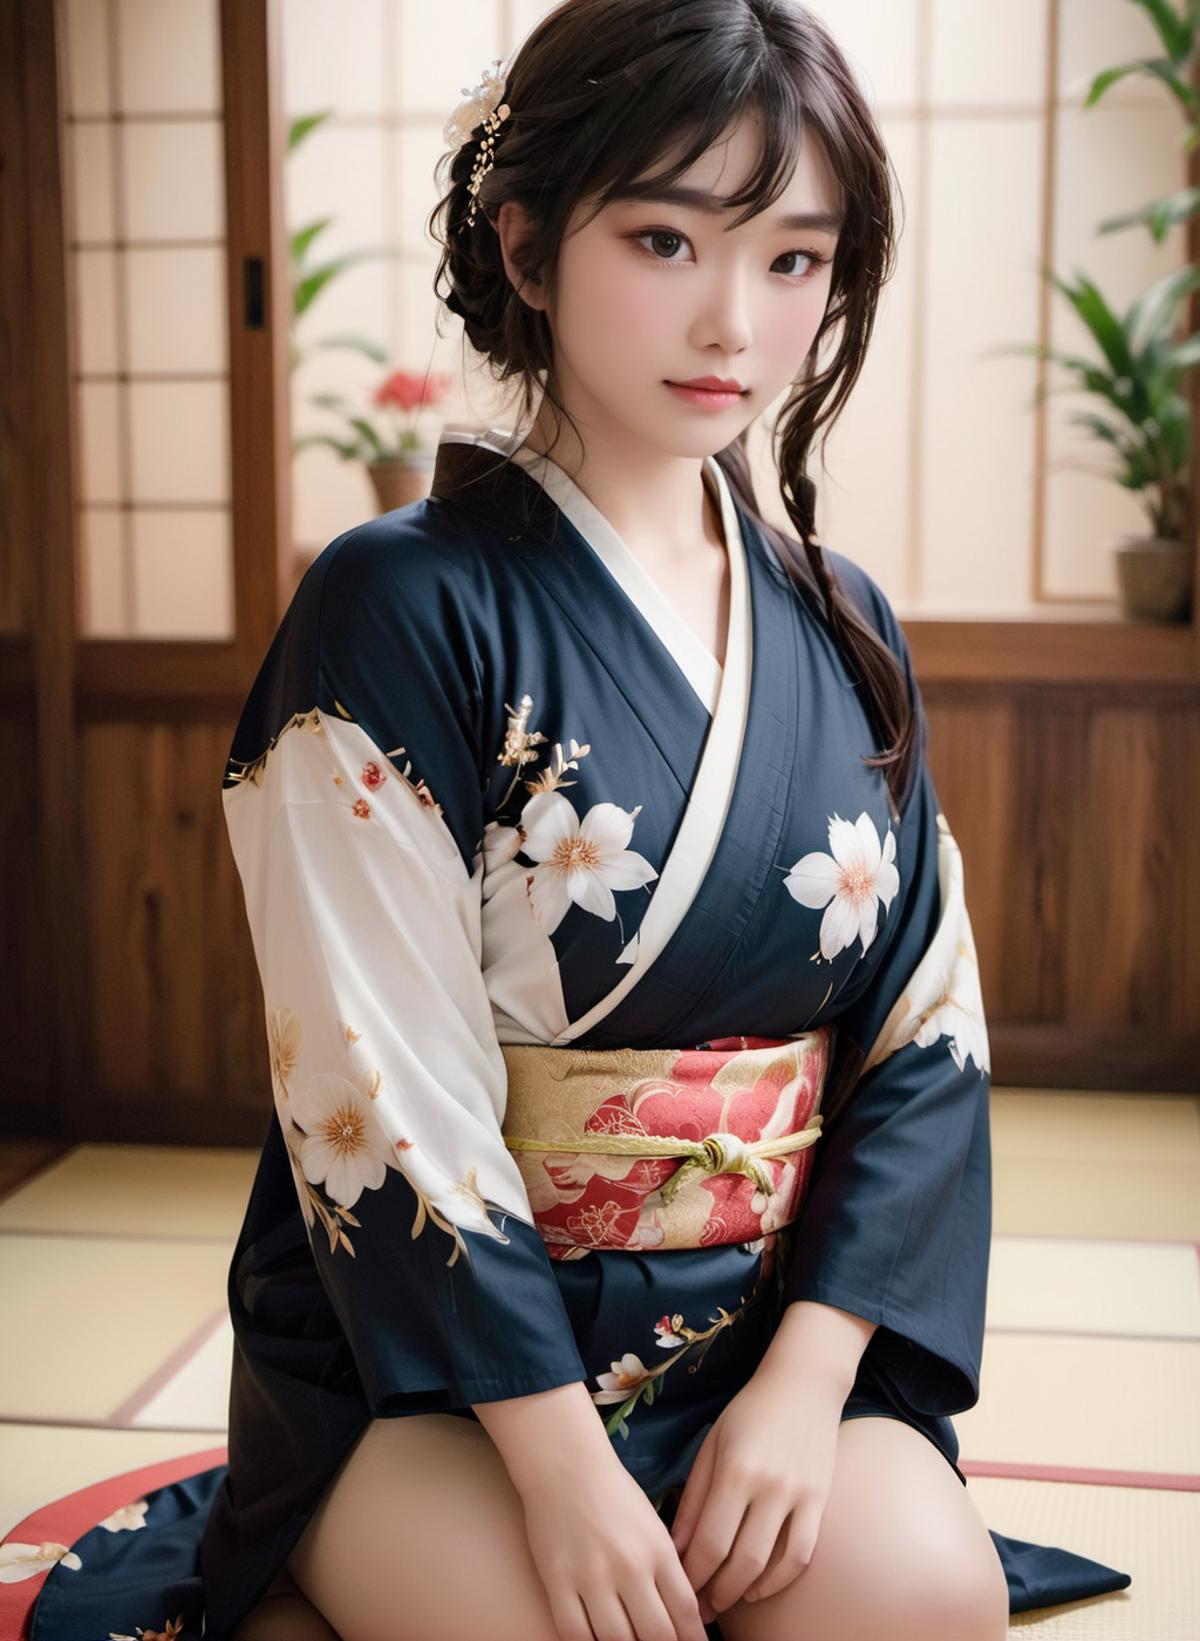 kimono_LoRA image by dinadecreator